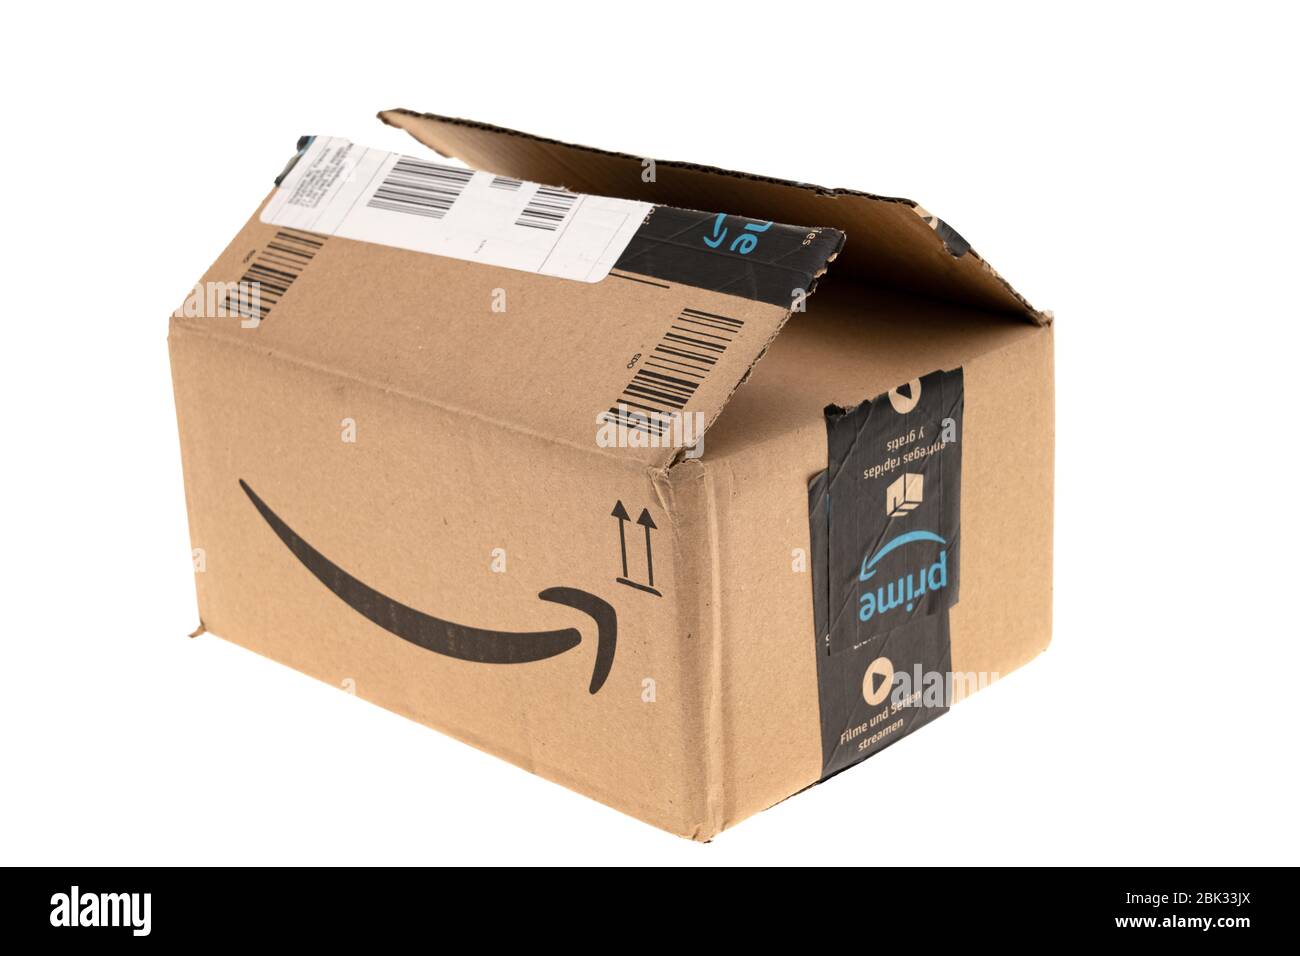 Londra, Regno Unito - 10 aprile 2020: Apertura del pacchetto o della scatola di spedizione Amazon prime su sfondo bianco. Amazon.com è stato online nel 1995 ed è ora Foto Stock